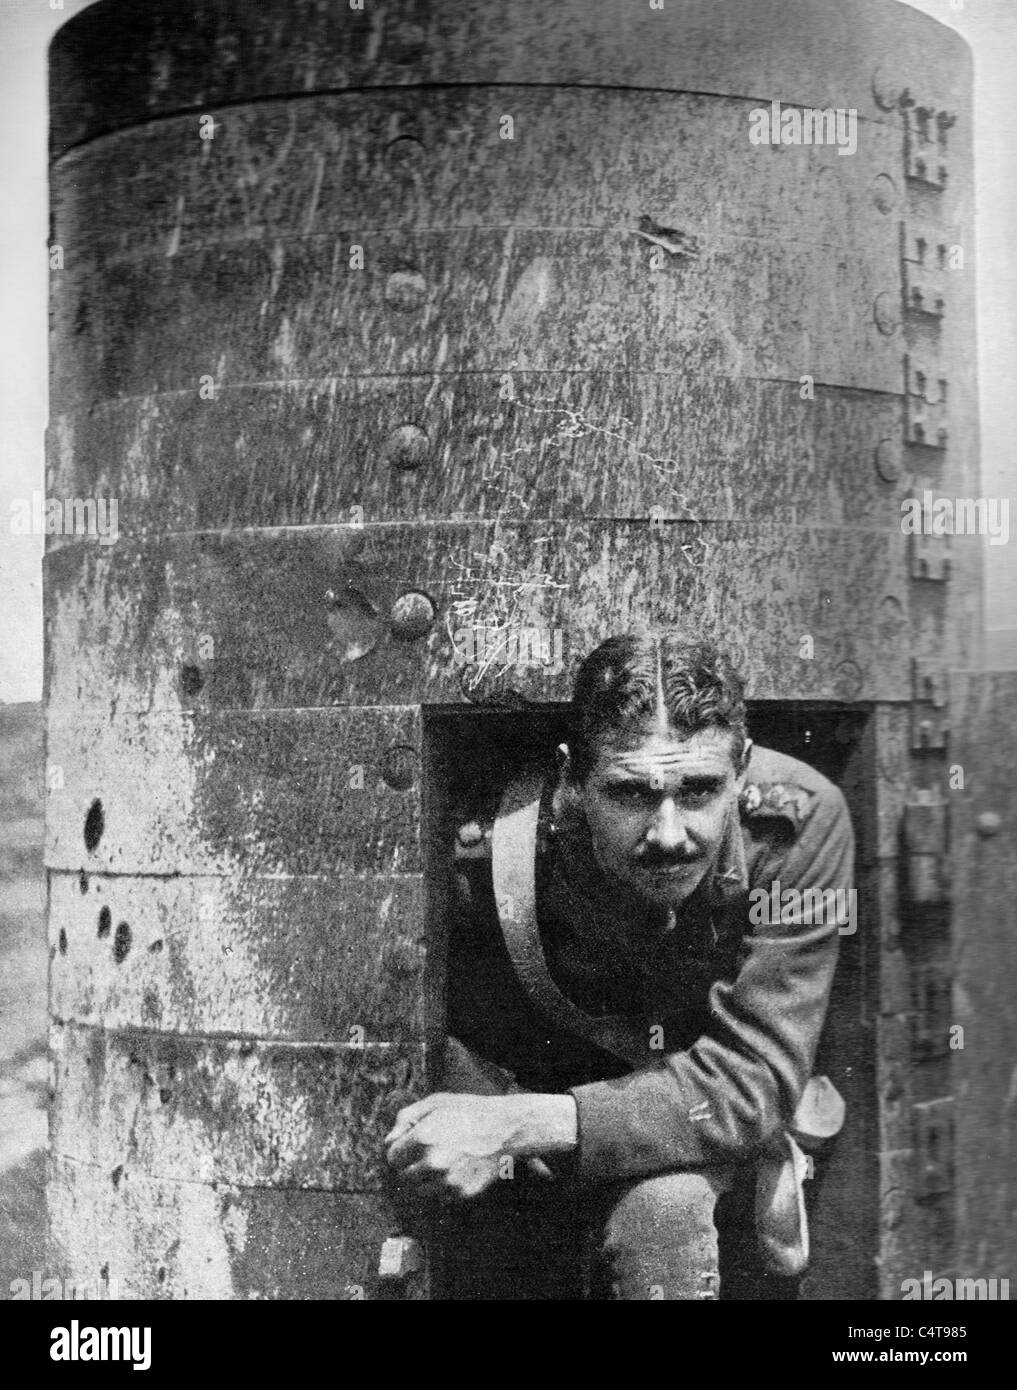 Periscope sur le champ de bataille - un poste d'observation blindé allemand capturé par les Britanniques en Flandre pendant la Première Guerre mondiale Banque D'Images